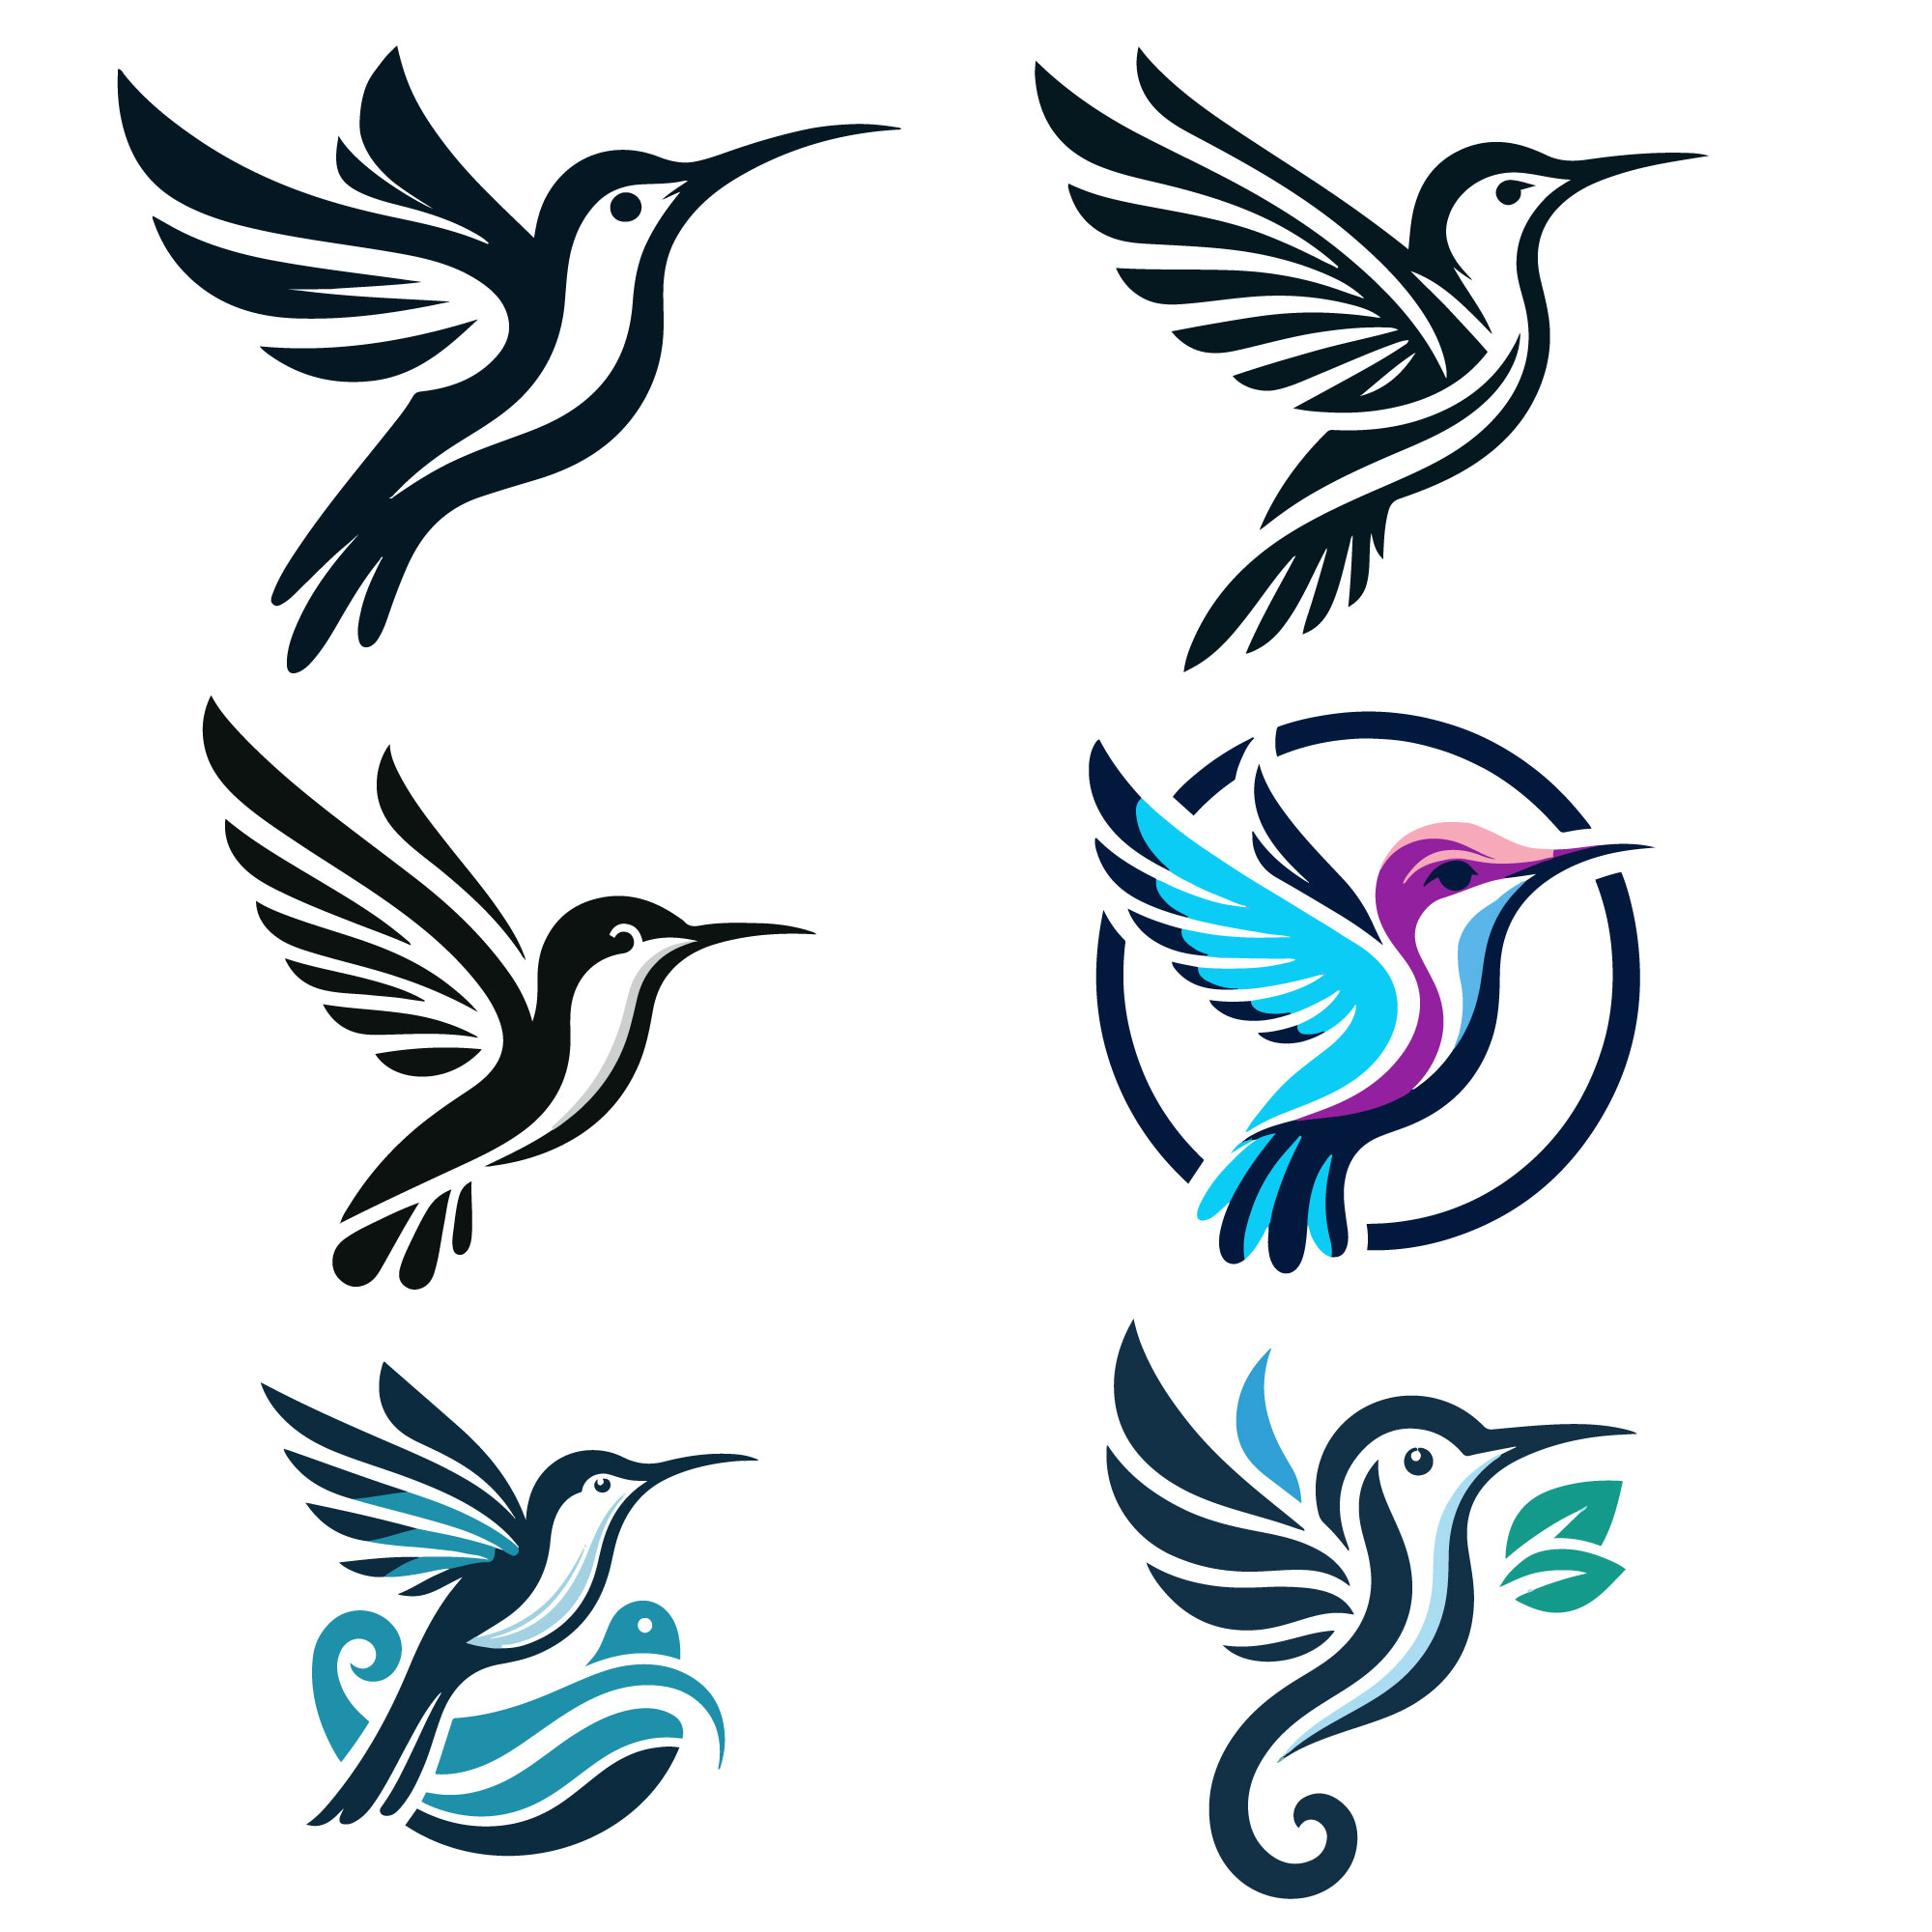 6 hummingbird vector logos illustration preview 672